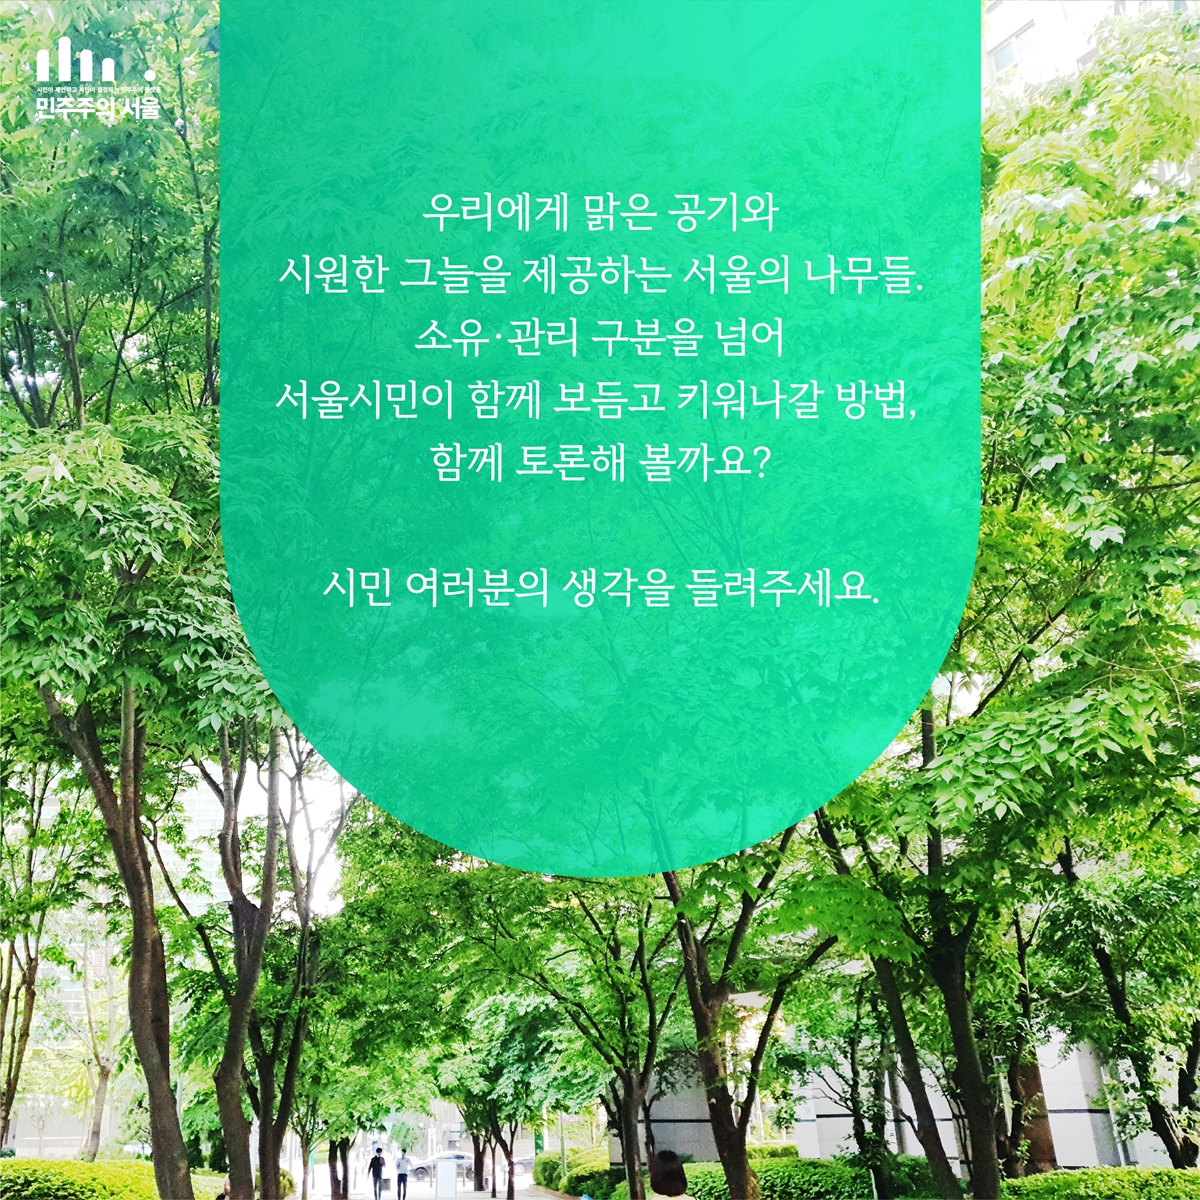 우리에게 맑은 공기와 시원한 그늘을 제공하는 서울의 나무들. 소유·관리 구분을 넘어 서울시민이 함께 보듬고 키워나갈 방법, 함께 토론해 볼까요? 시민 여러분의 생각을 들려주세요.